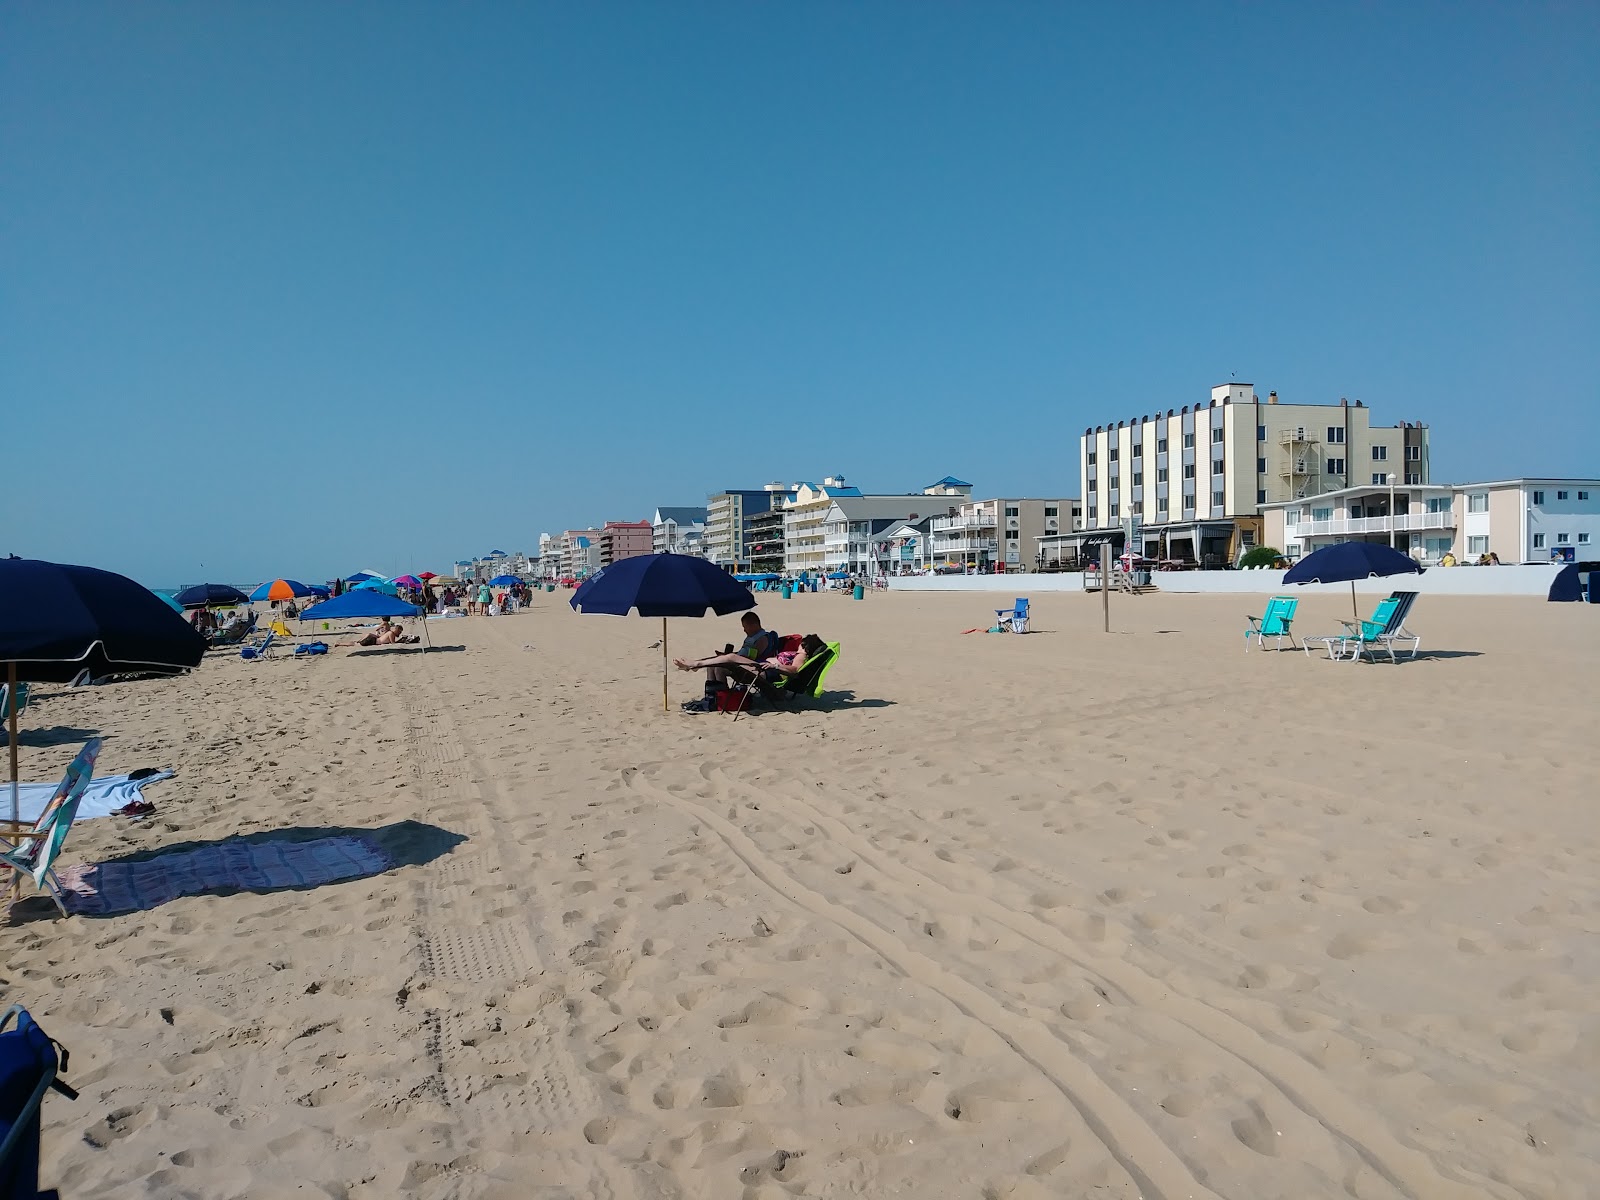 Fotografija Ocean City beach III priljubljeno mesto med poznavalci sprostitve